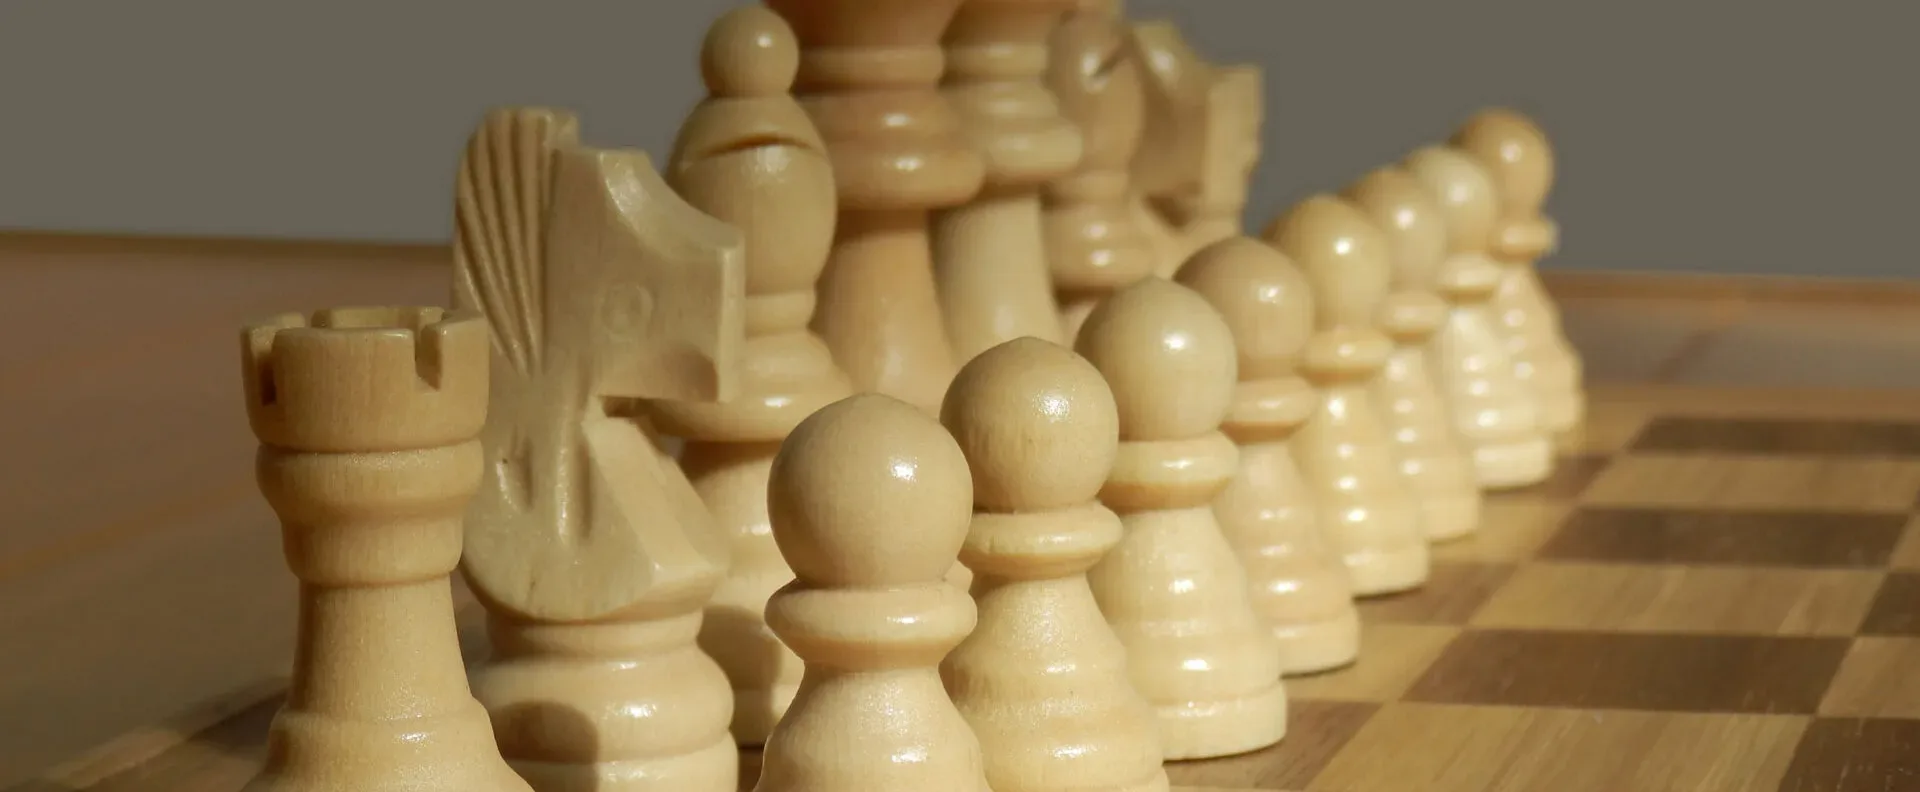 Ver categoría de ajedrez de madera plegable